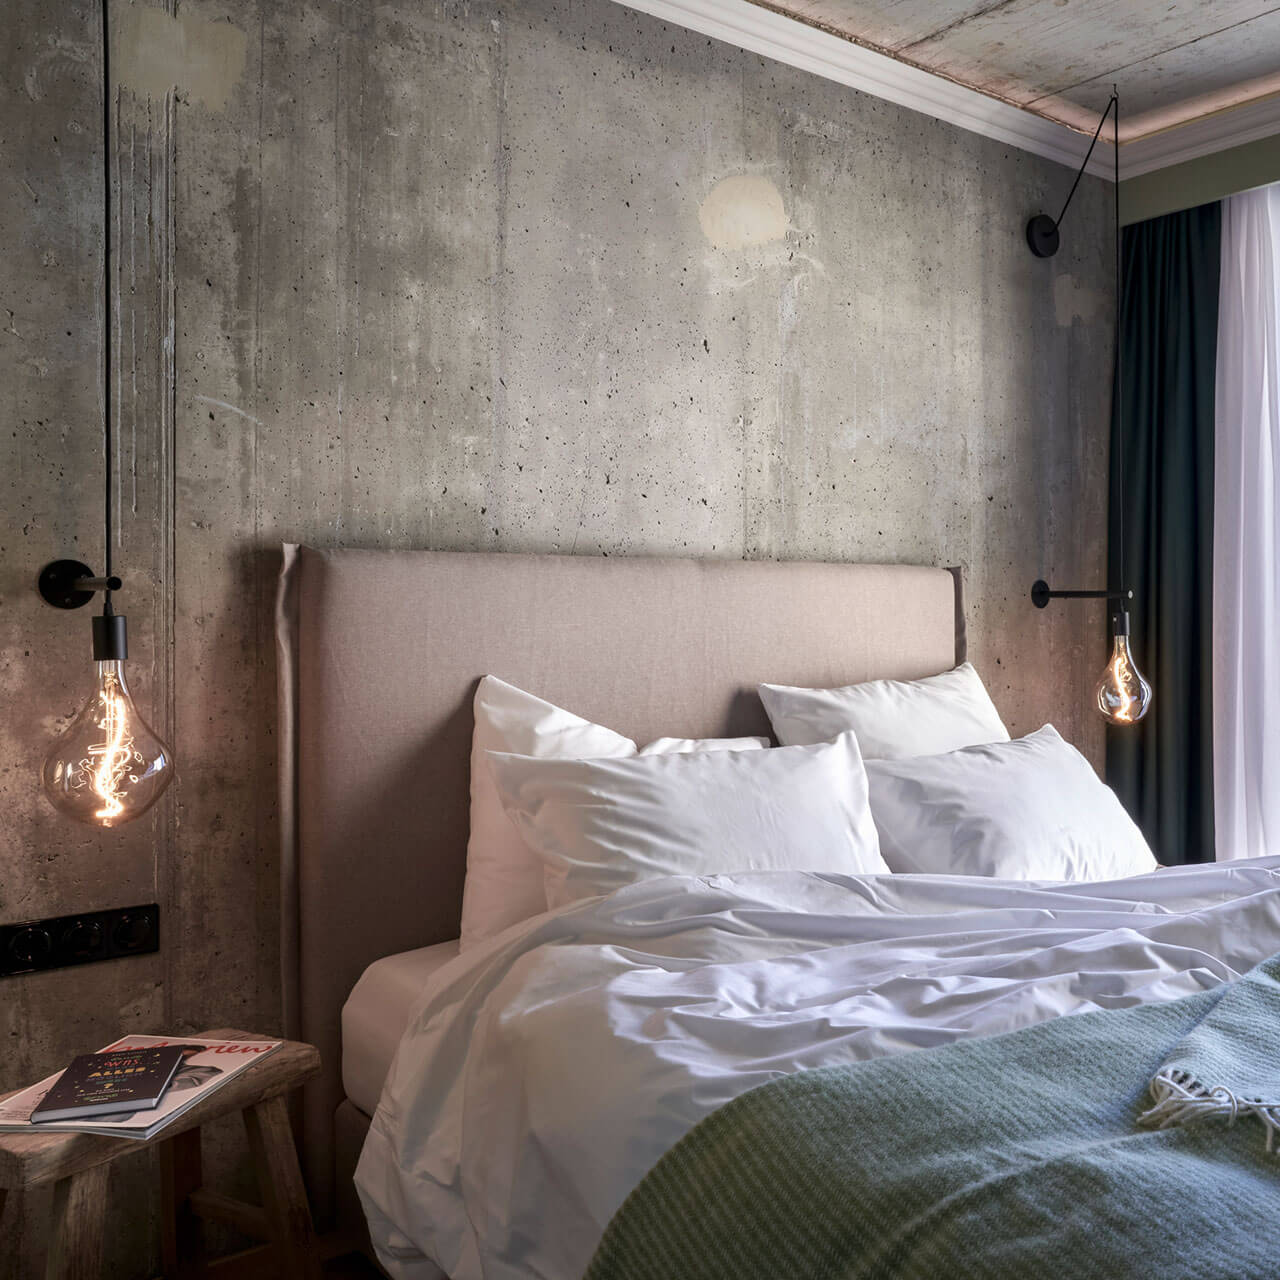 Superior Room: Großes Bett, daneben Holzschemel und warme Lichtquellen.